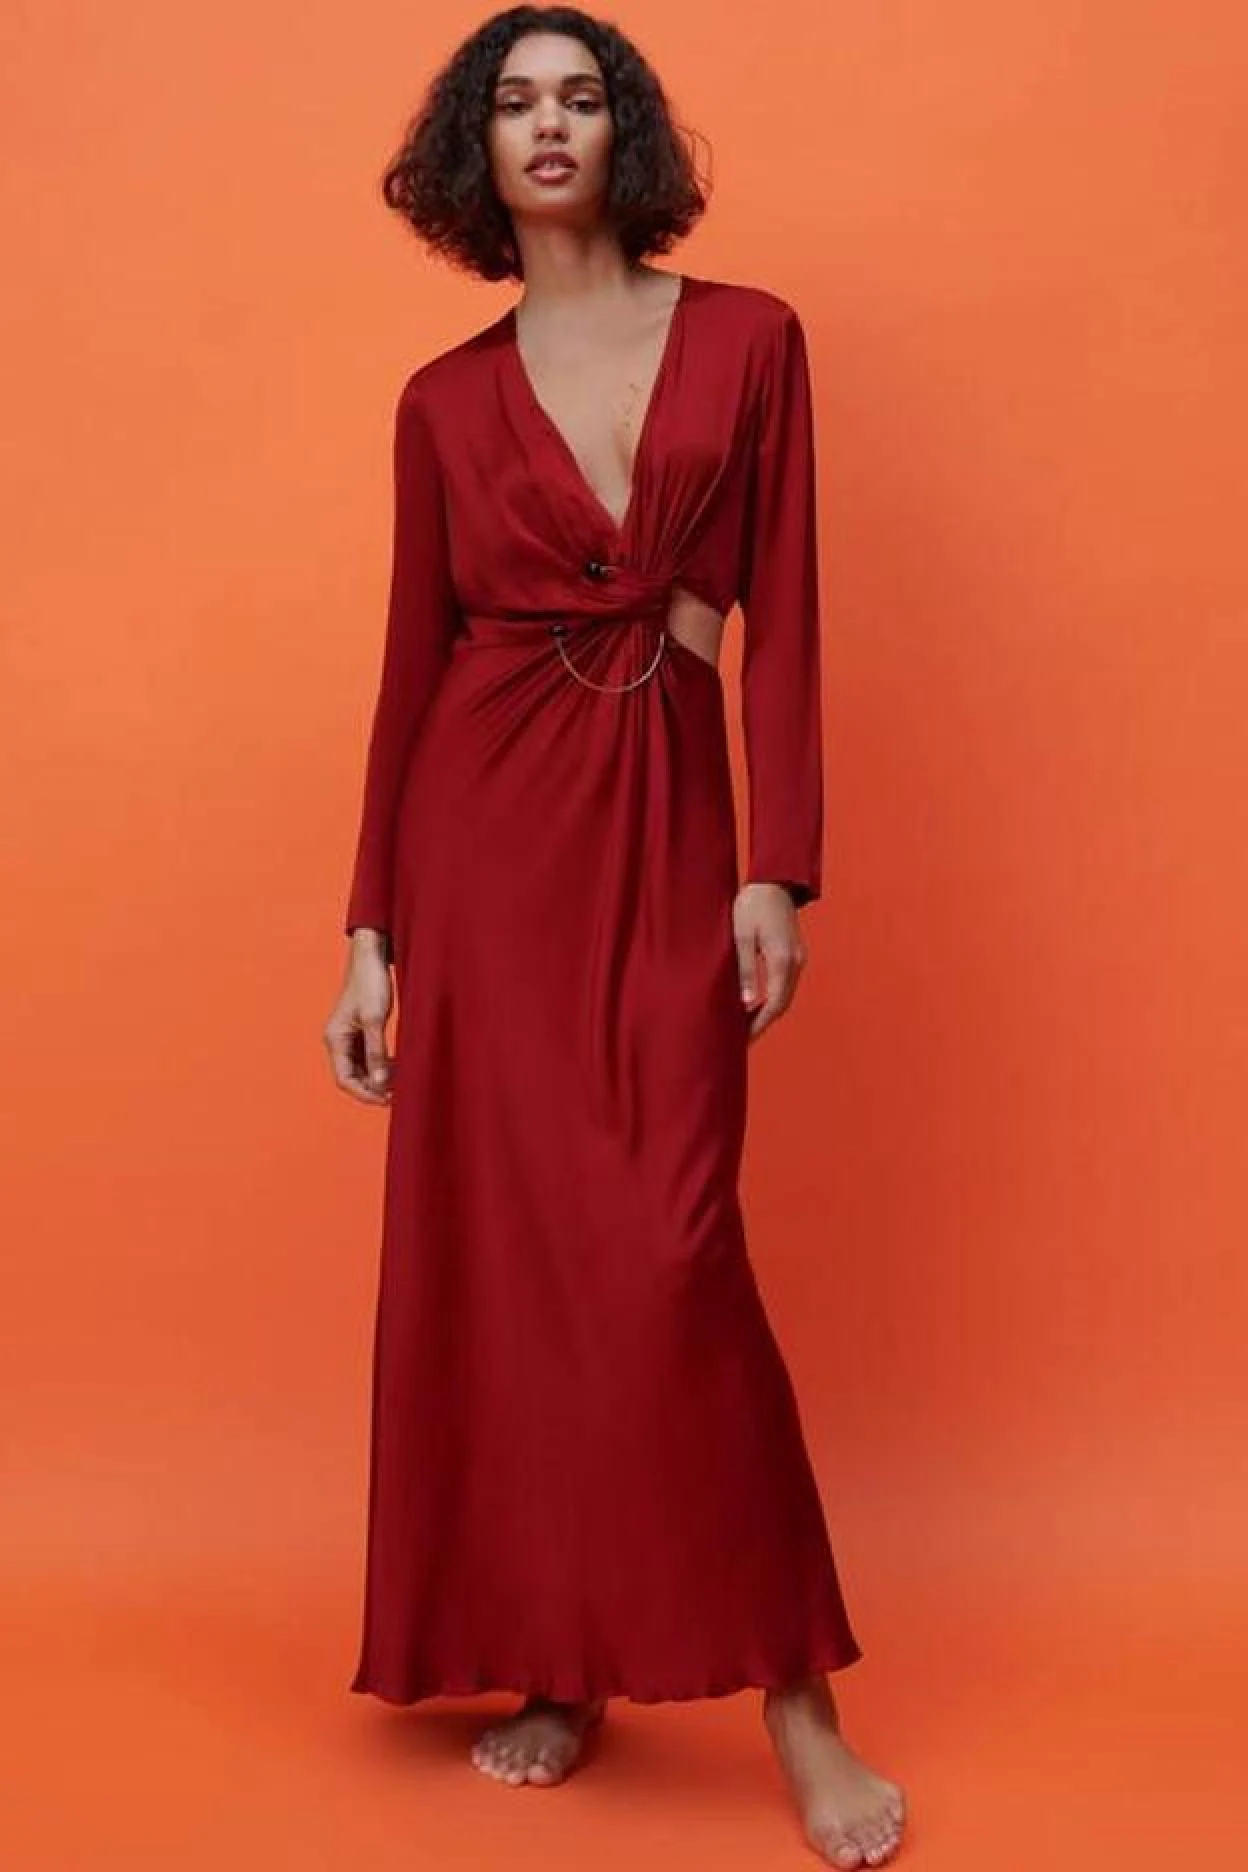 Largo, aberturas y de color granate: Zara nos presenta el vestido más especial de la temporada que sienta de y va | Mujer Hoy